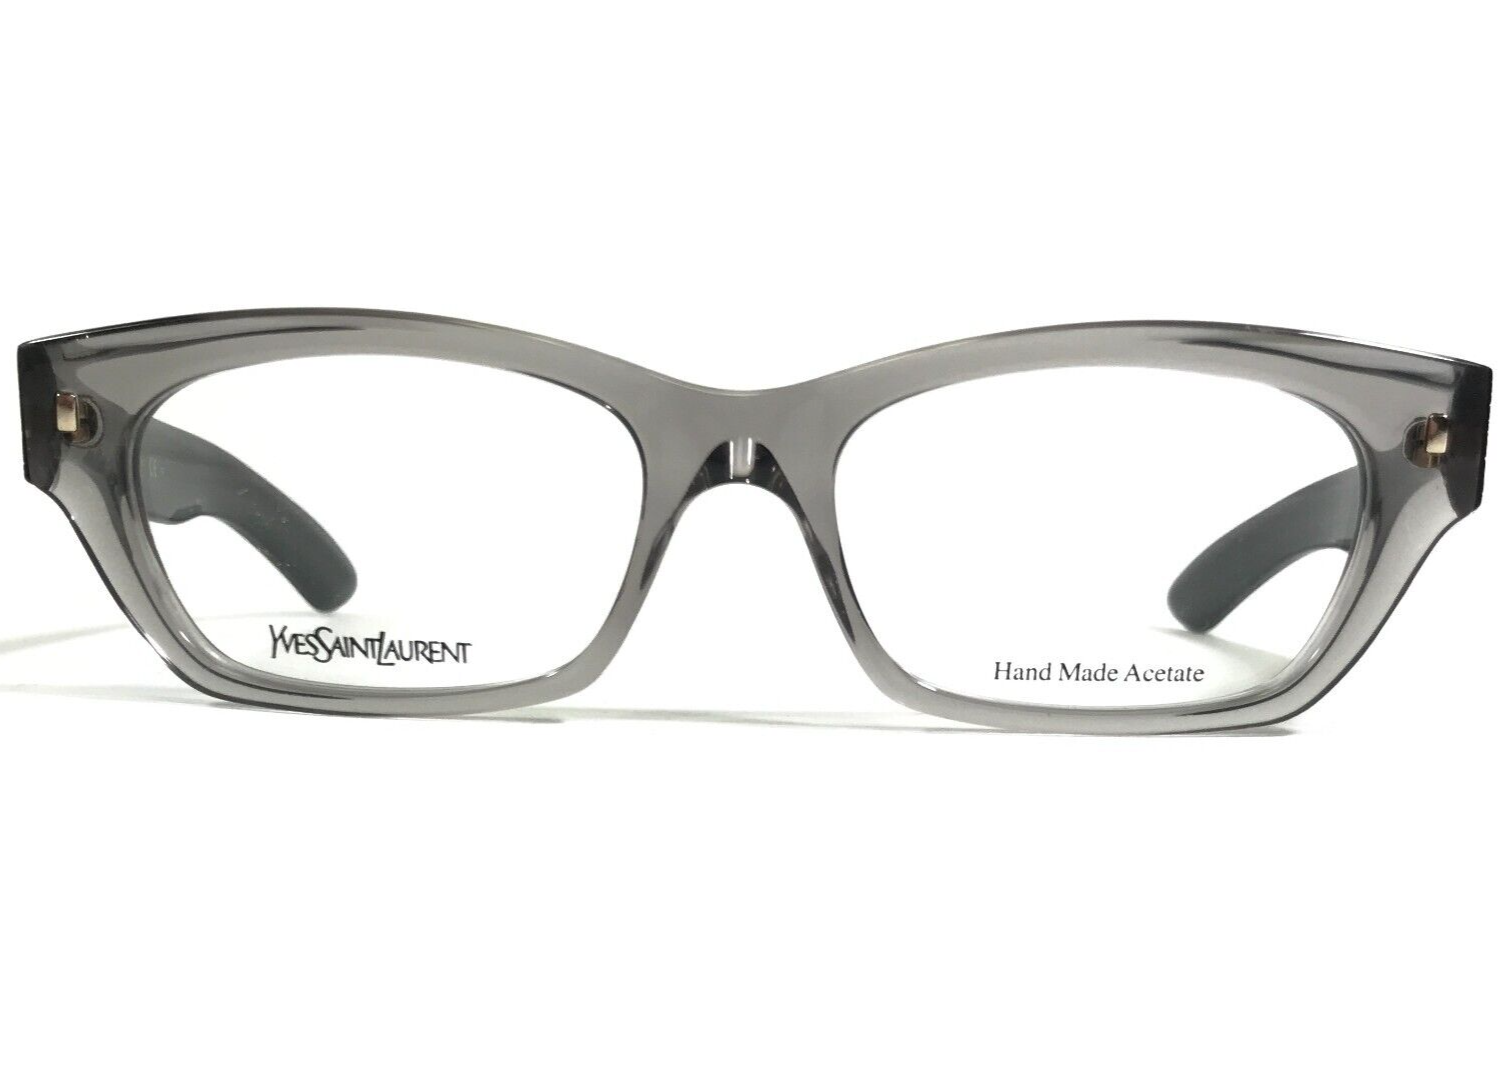 Primary image for Yves Saint Laurent Eyeglasses Frames YSL6333 950 Black Clear Gray 51-17-140